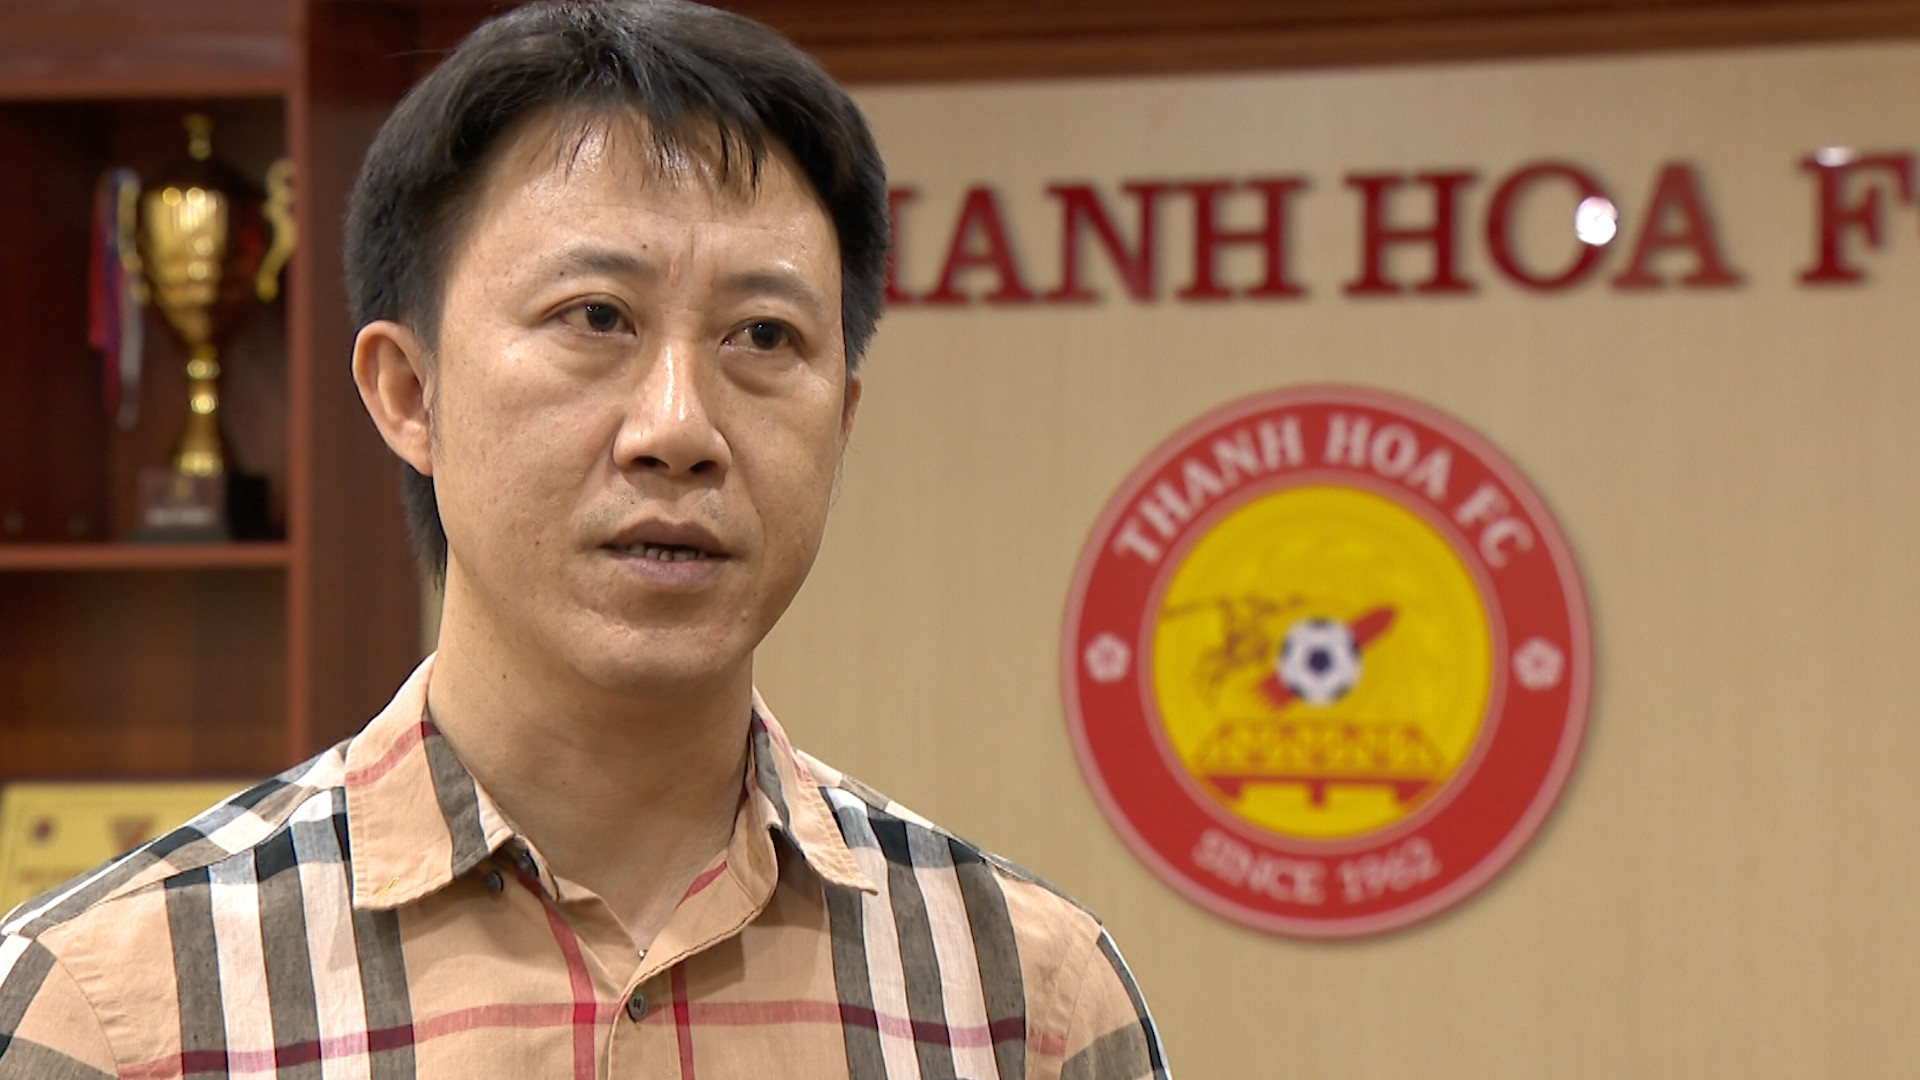 HLV Nguyễn Thành Công chính thức dẫn dắt CLB Thanh Hóa, đây là đội bóng thứ 2 anh dẫn dắt tại V.League. Ảnh: Trung Kiên